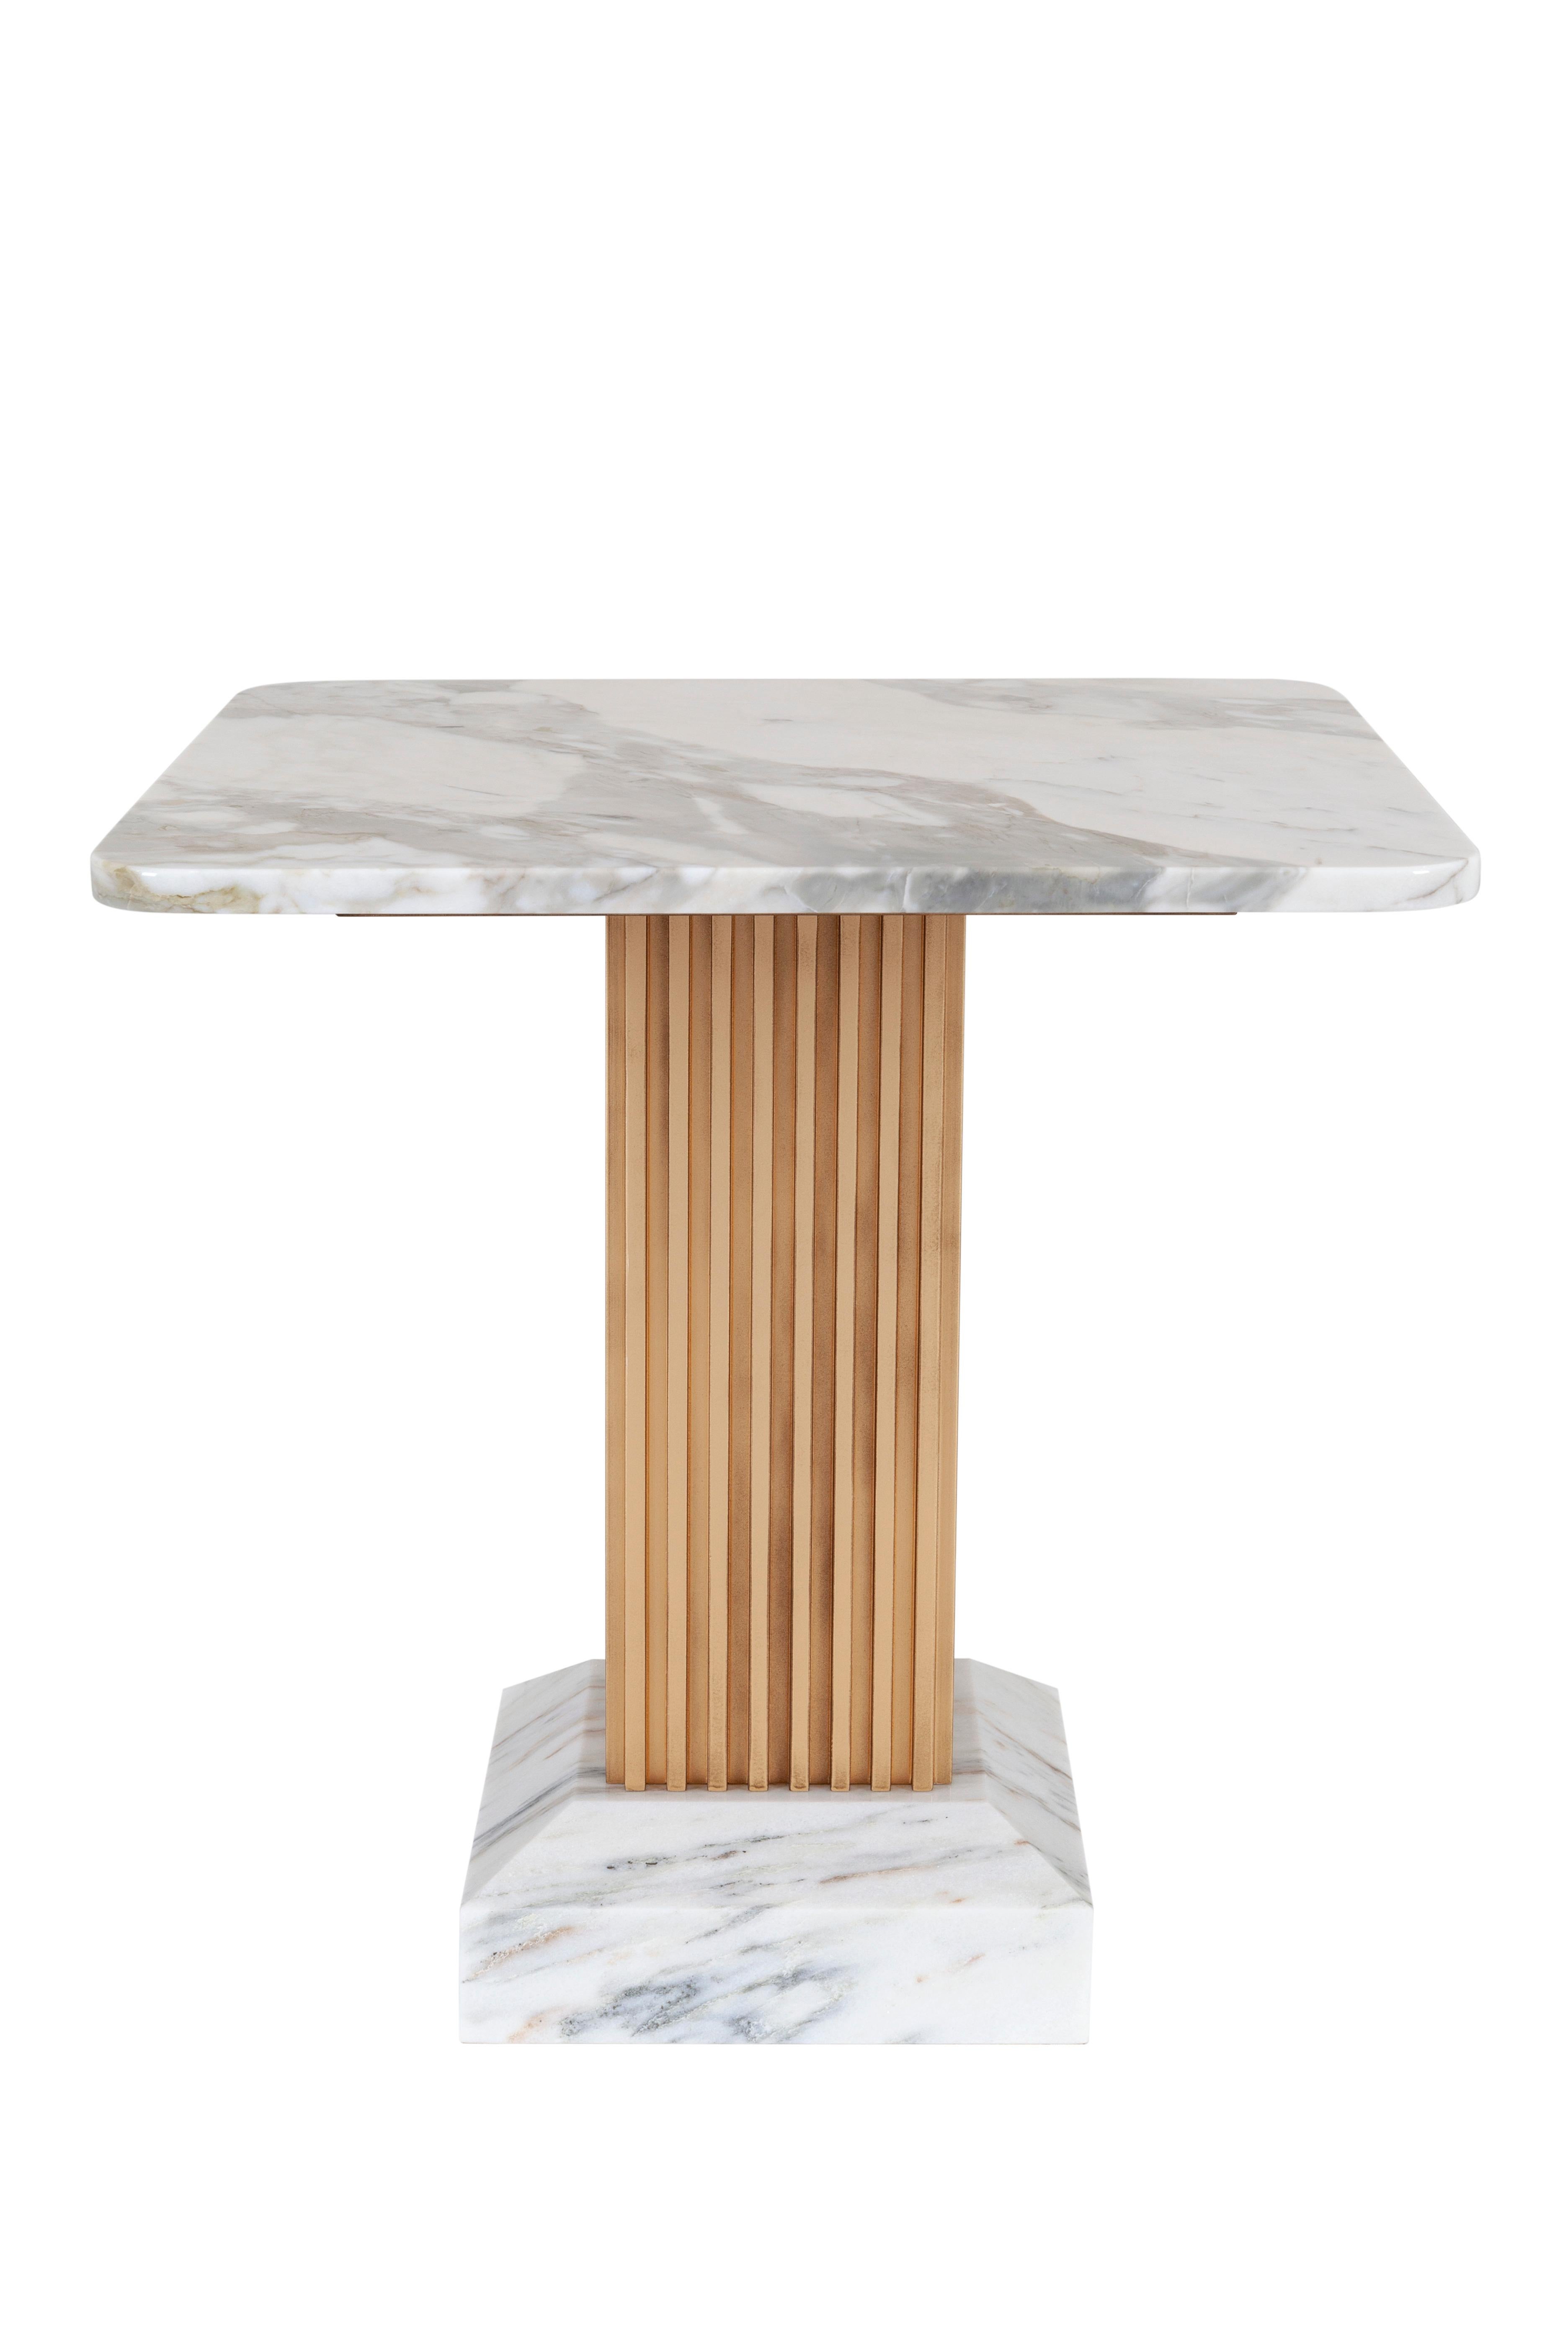 Dórica Bar Tisch, Modern Collection, Handgefertigt in Portugal - Europa von GF Modern.

Wie ein architektonisches Monument des antiken Griechenlands ist der Dórica Bartisch ein majestätisches Stück, das in Ihrem Wohnbereich eine beeindruckende